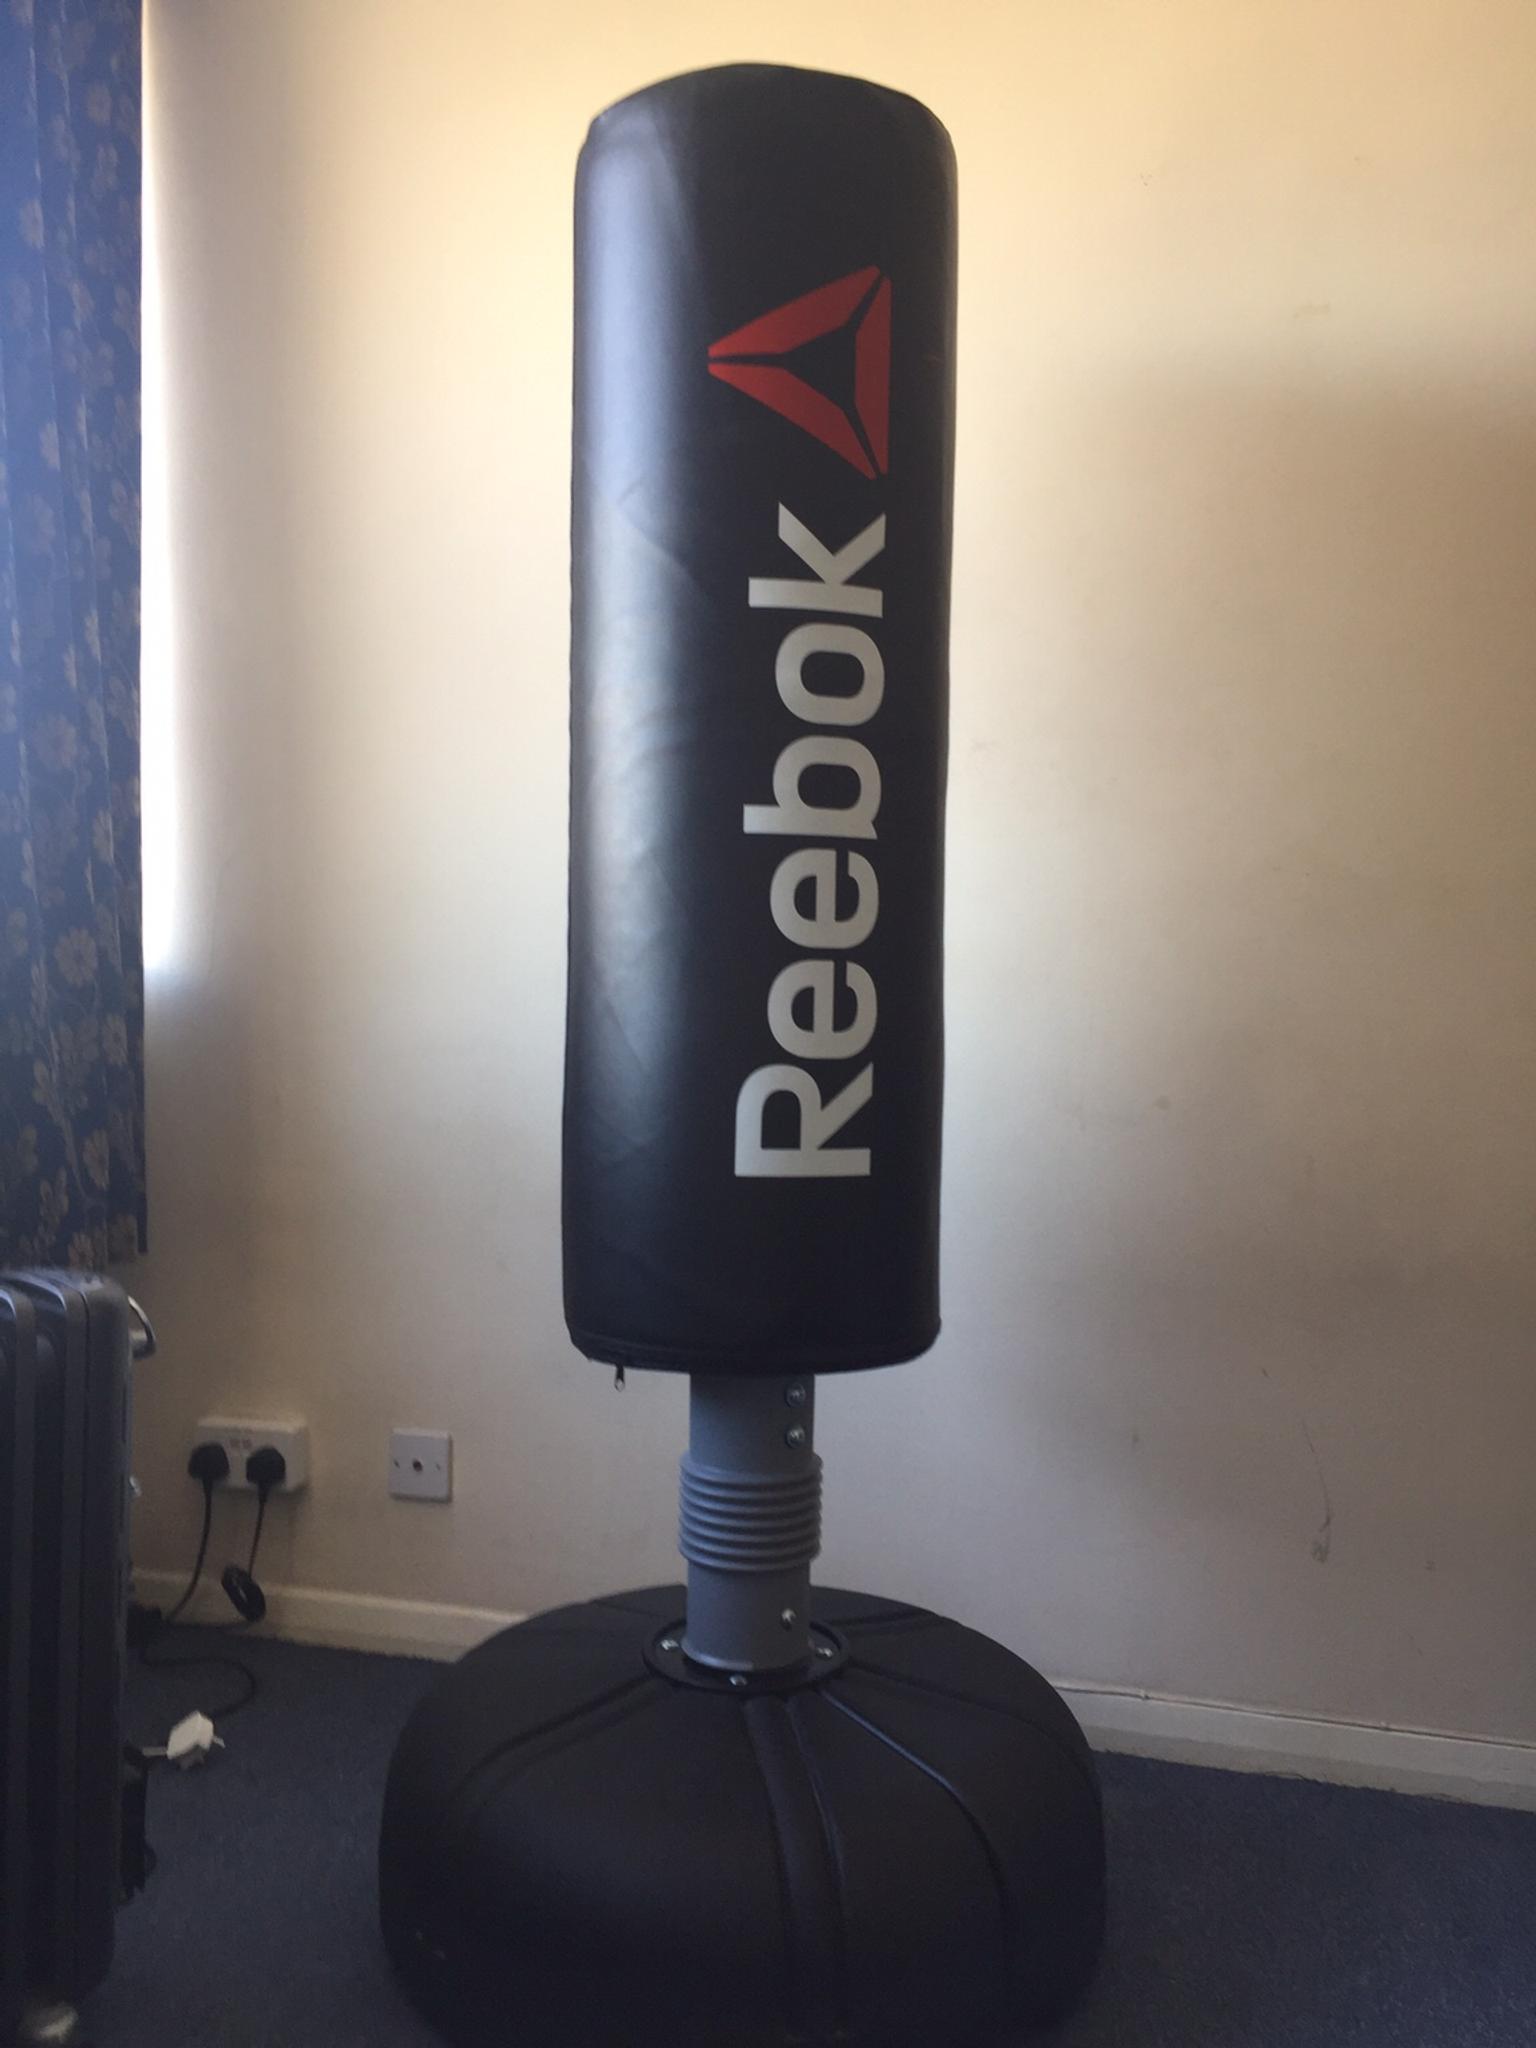 reebok freestanding punch bag